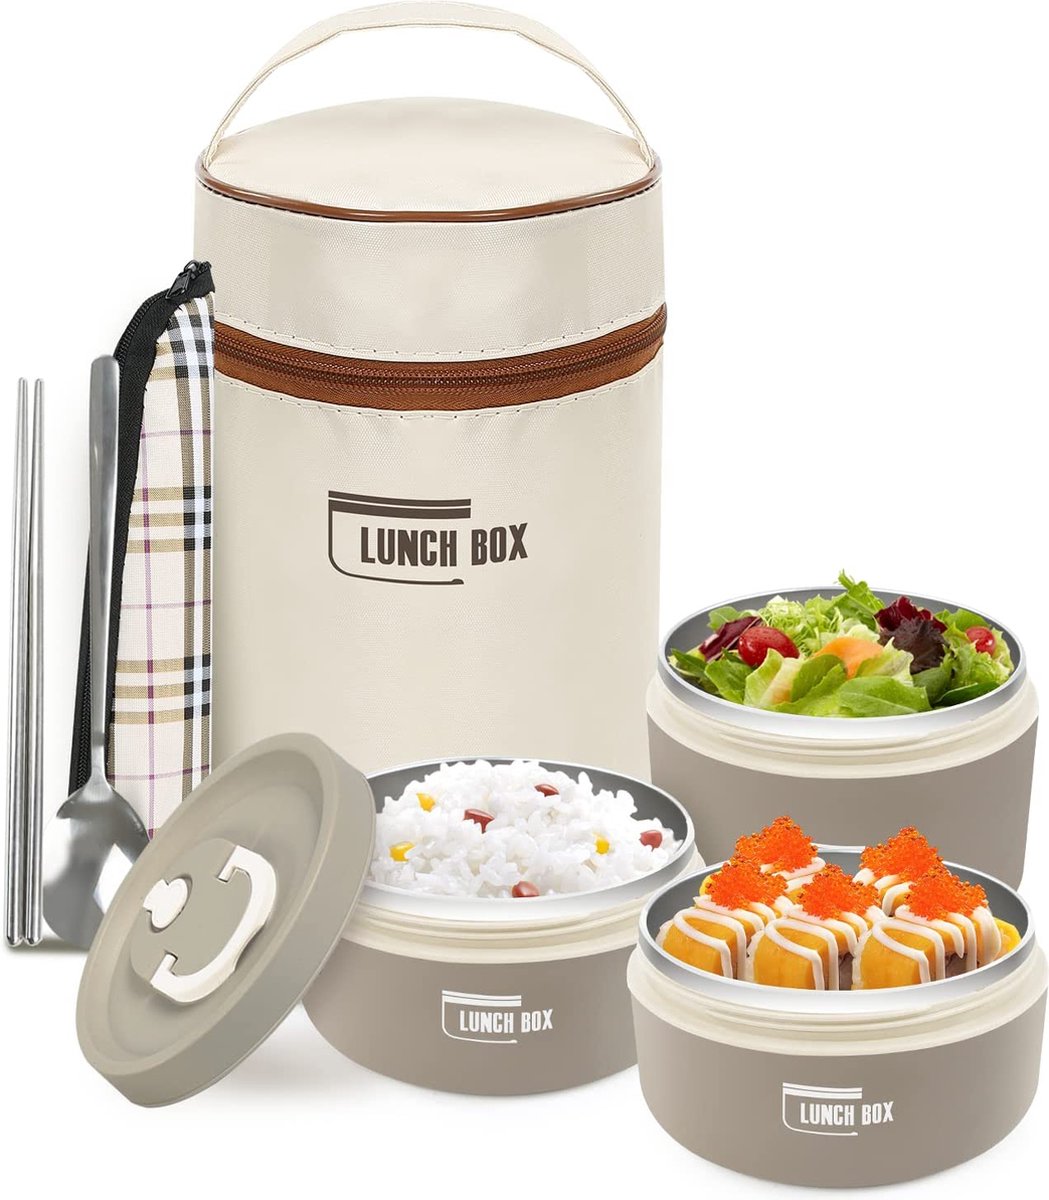 Lunchbox met zak, lekvrije voedselcontainer met keukengerei, 304 thermische voedseldoos van roestvrij staal, magnetron-/vriezerbestendig (3 lunchboxen, bruin)